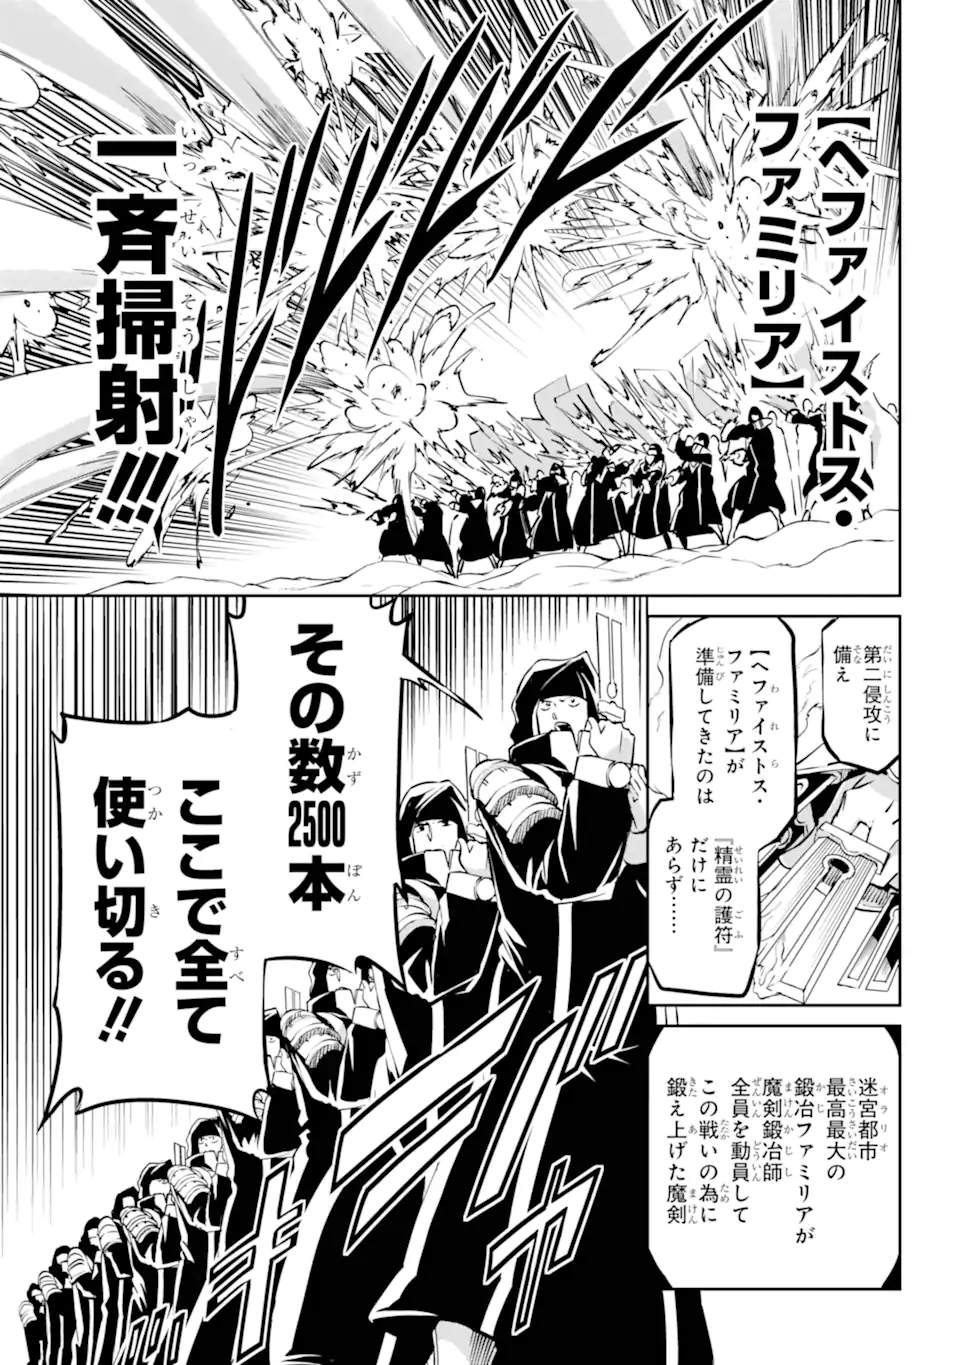 Dungeon ni Deai wo Motomeru no wa Machigatte Iru Darou ka Gaiden - Sword Oratoria - Chapter 118.2 - Page 4